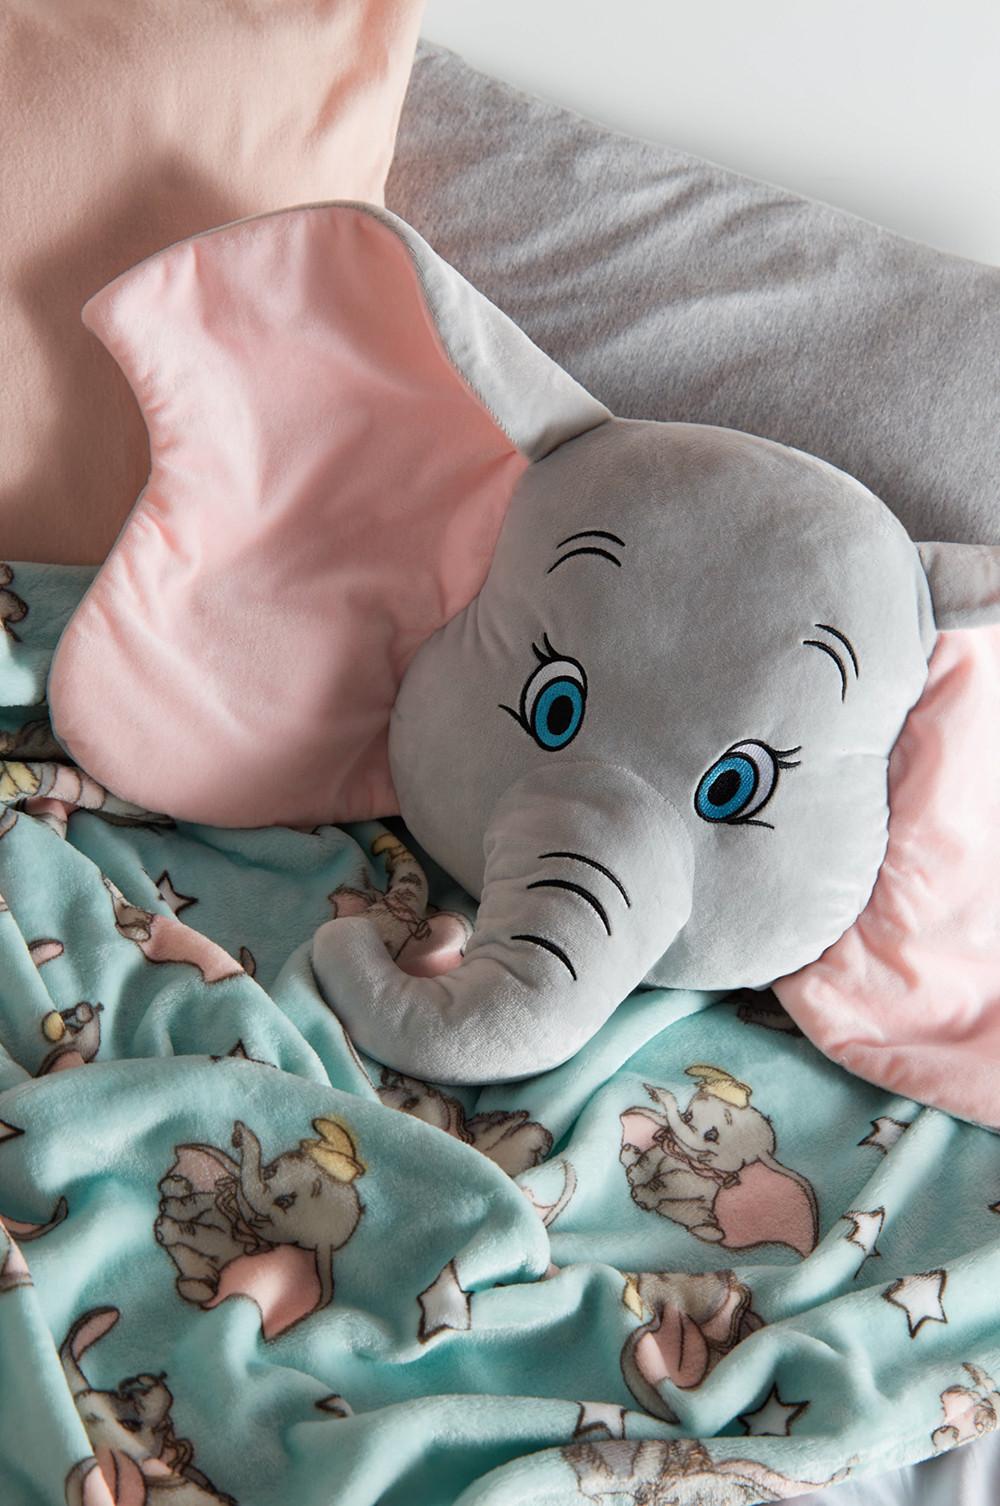 Disney Dumbo Elefant Kissen XXL Sofakissen Groß Plüschtier Deko Figur Primark 